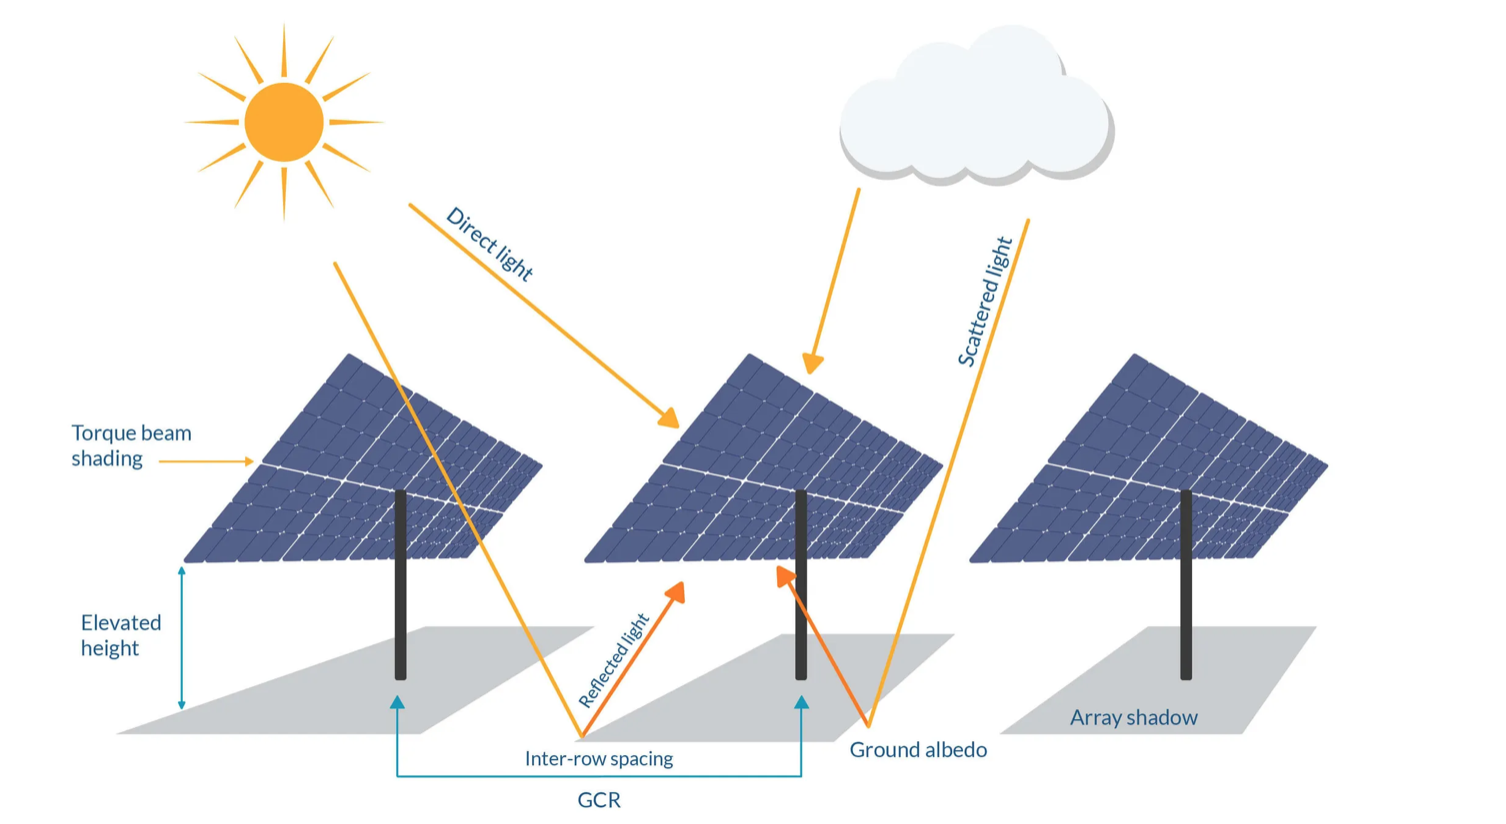 Bifacial Solar Panels Market